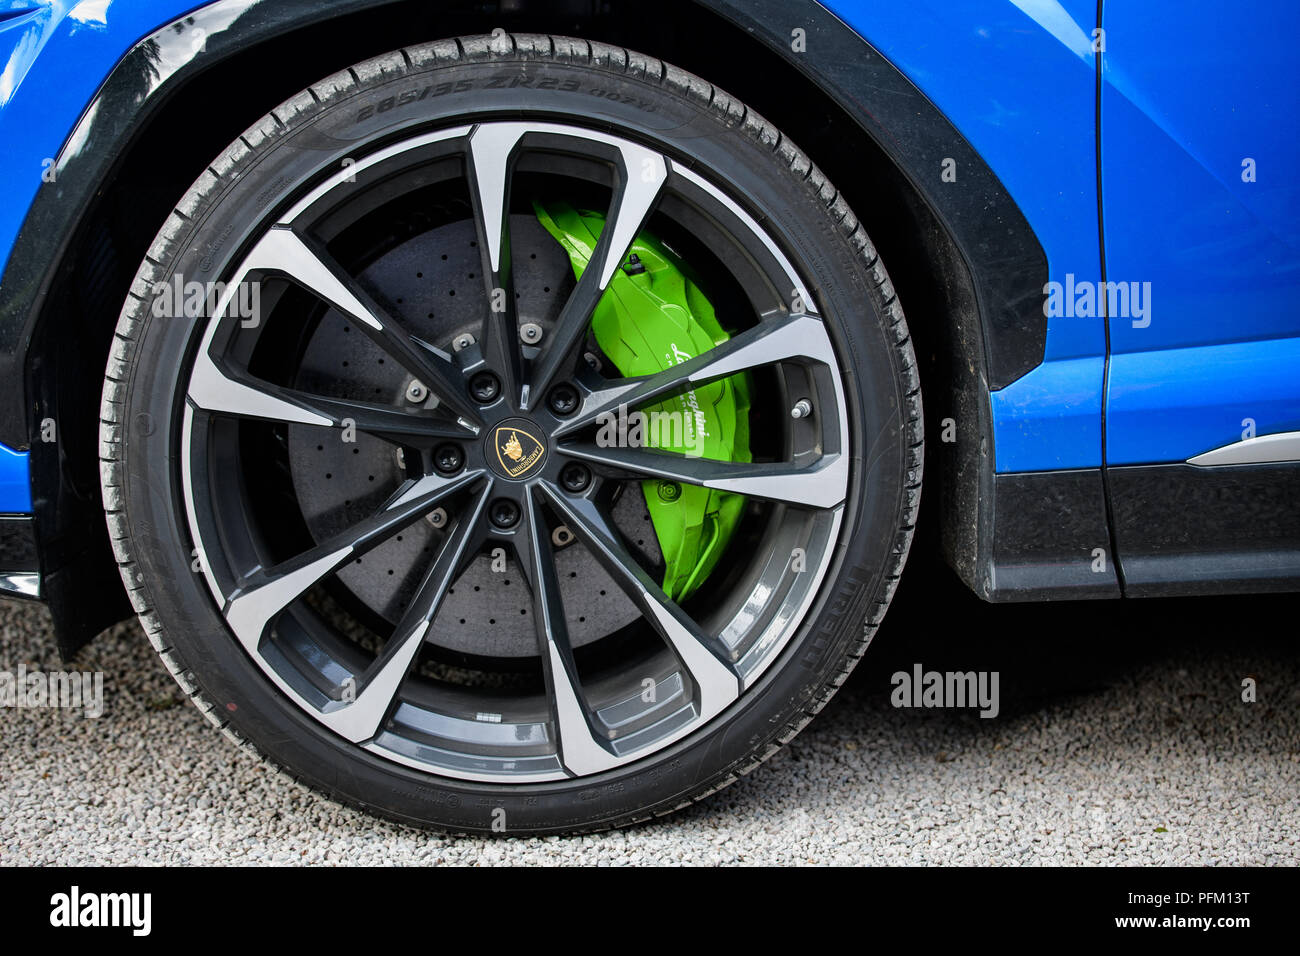 Cardiff, Wales, UK - 19 août 2018 : roue et des disques de frein sur un  fond bleu Lamborghini Urus Photo Stock - Alamy